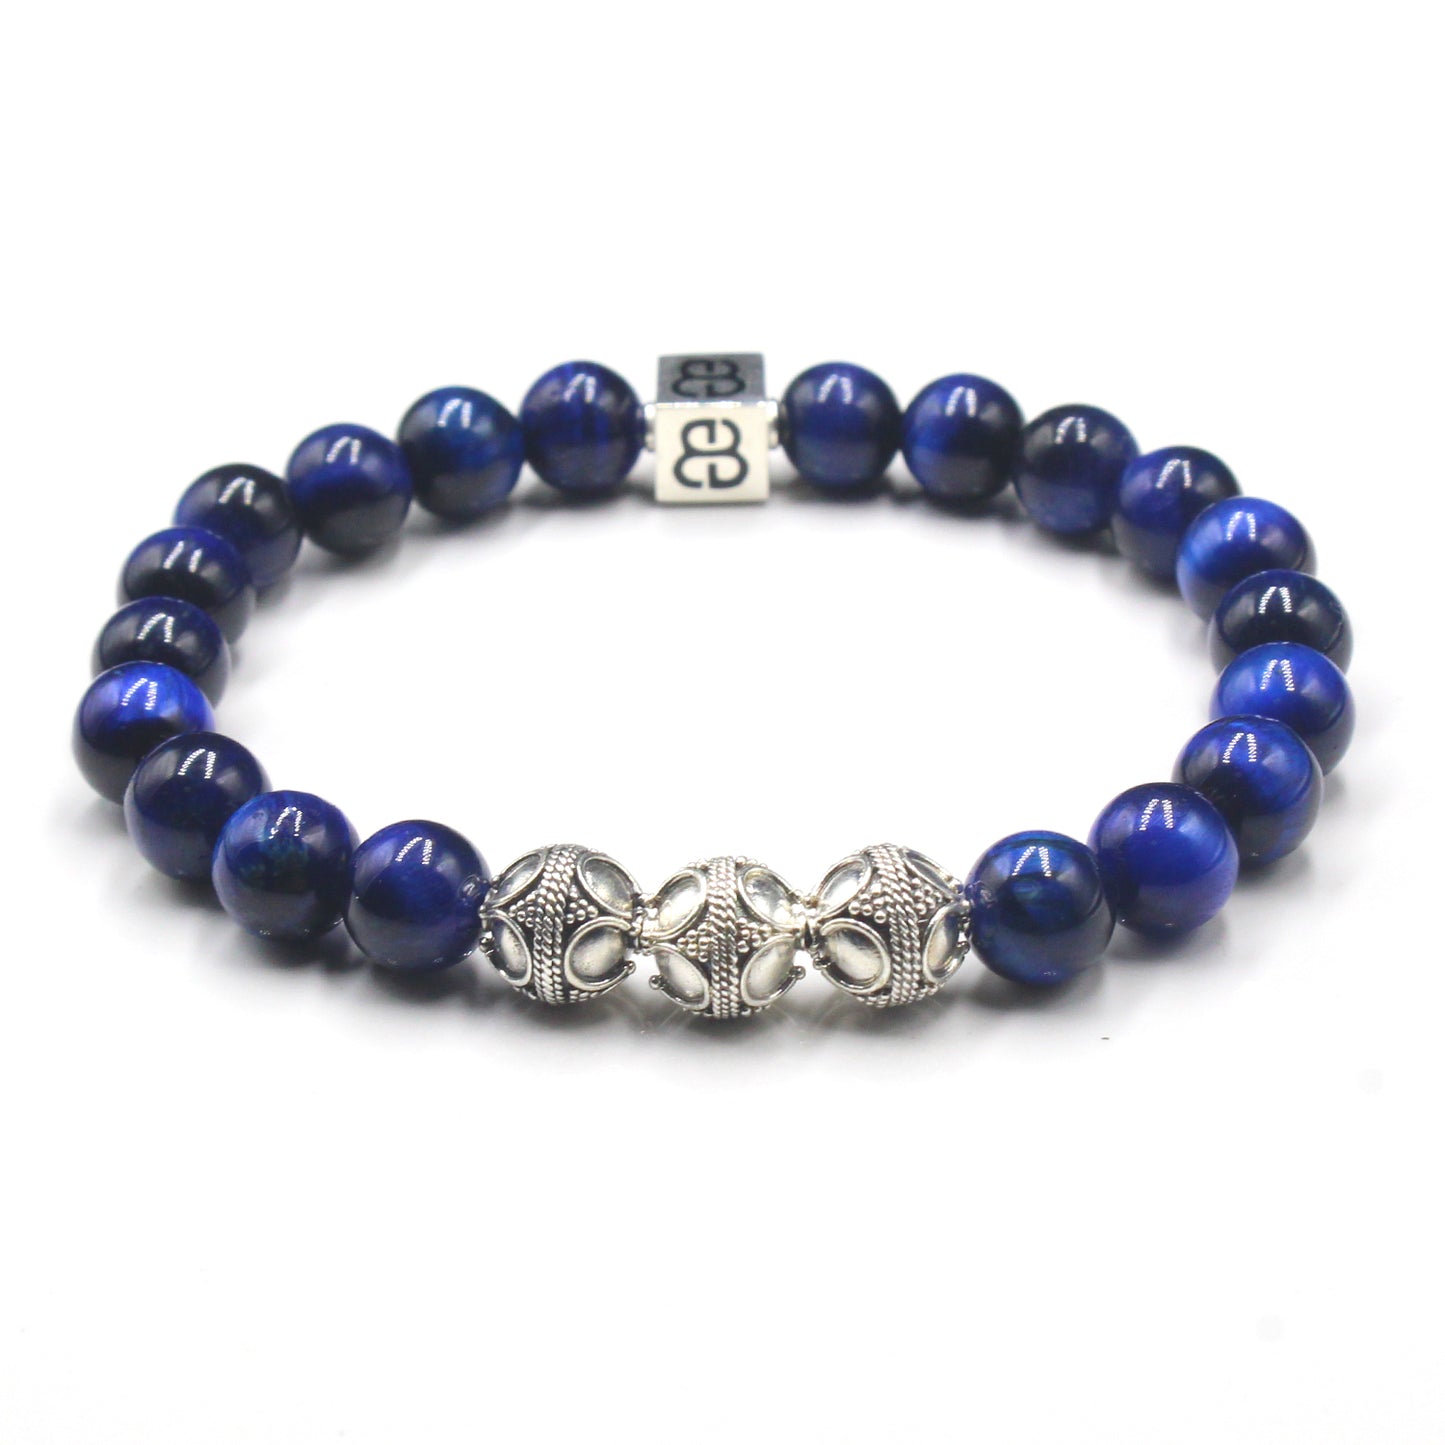 Blue Tiger's Eye Bracelet, Blue Tiger's Eye and Sterling Silver Bali Beads Bracelet, Men's Designer Bracelet